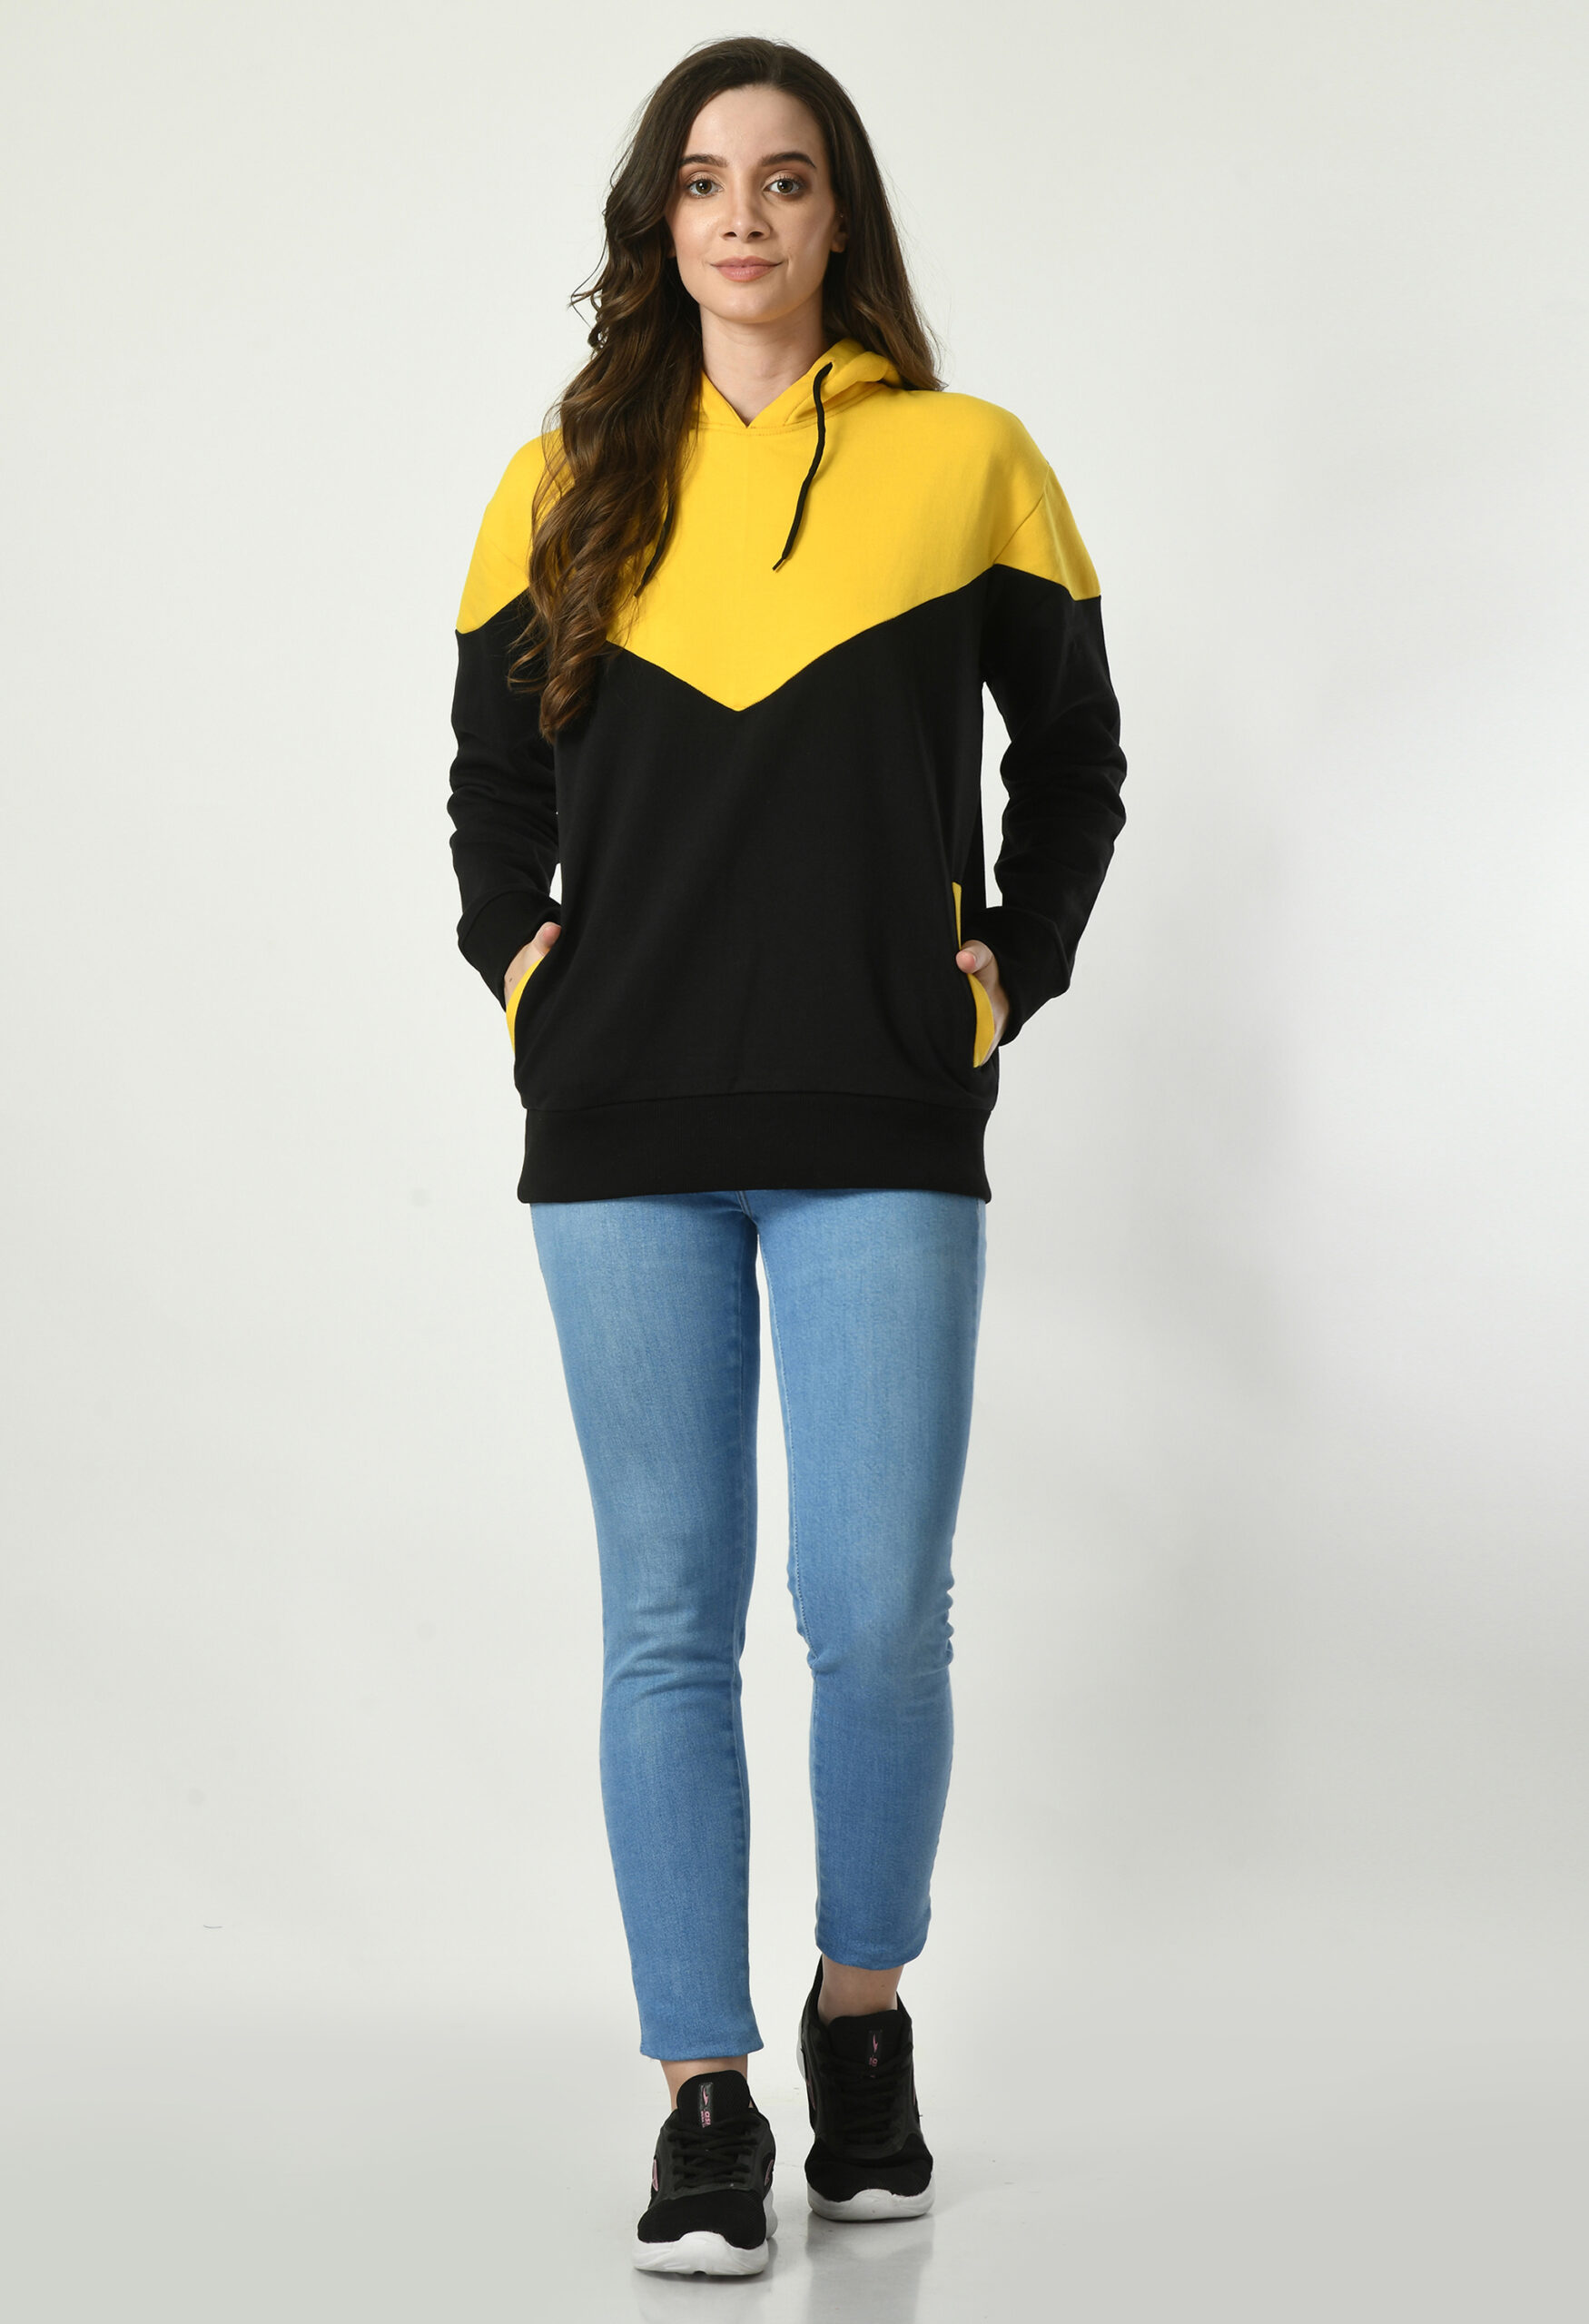 Designer Hoodie for Women - Yellow & Black V Shaped - 2